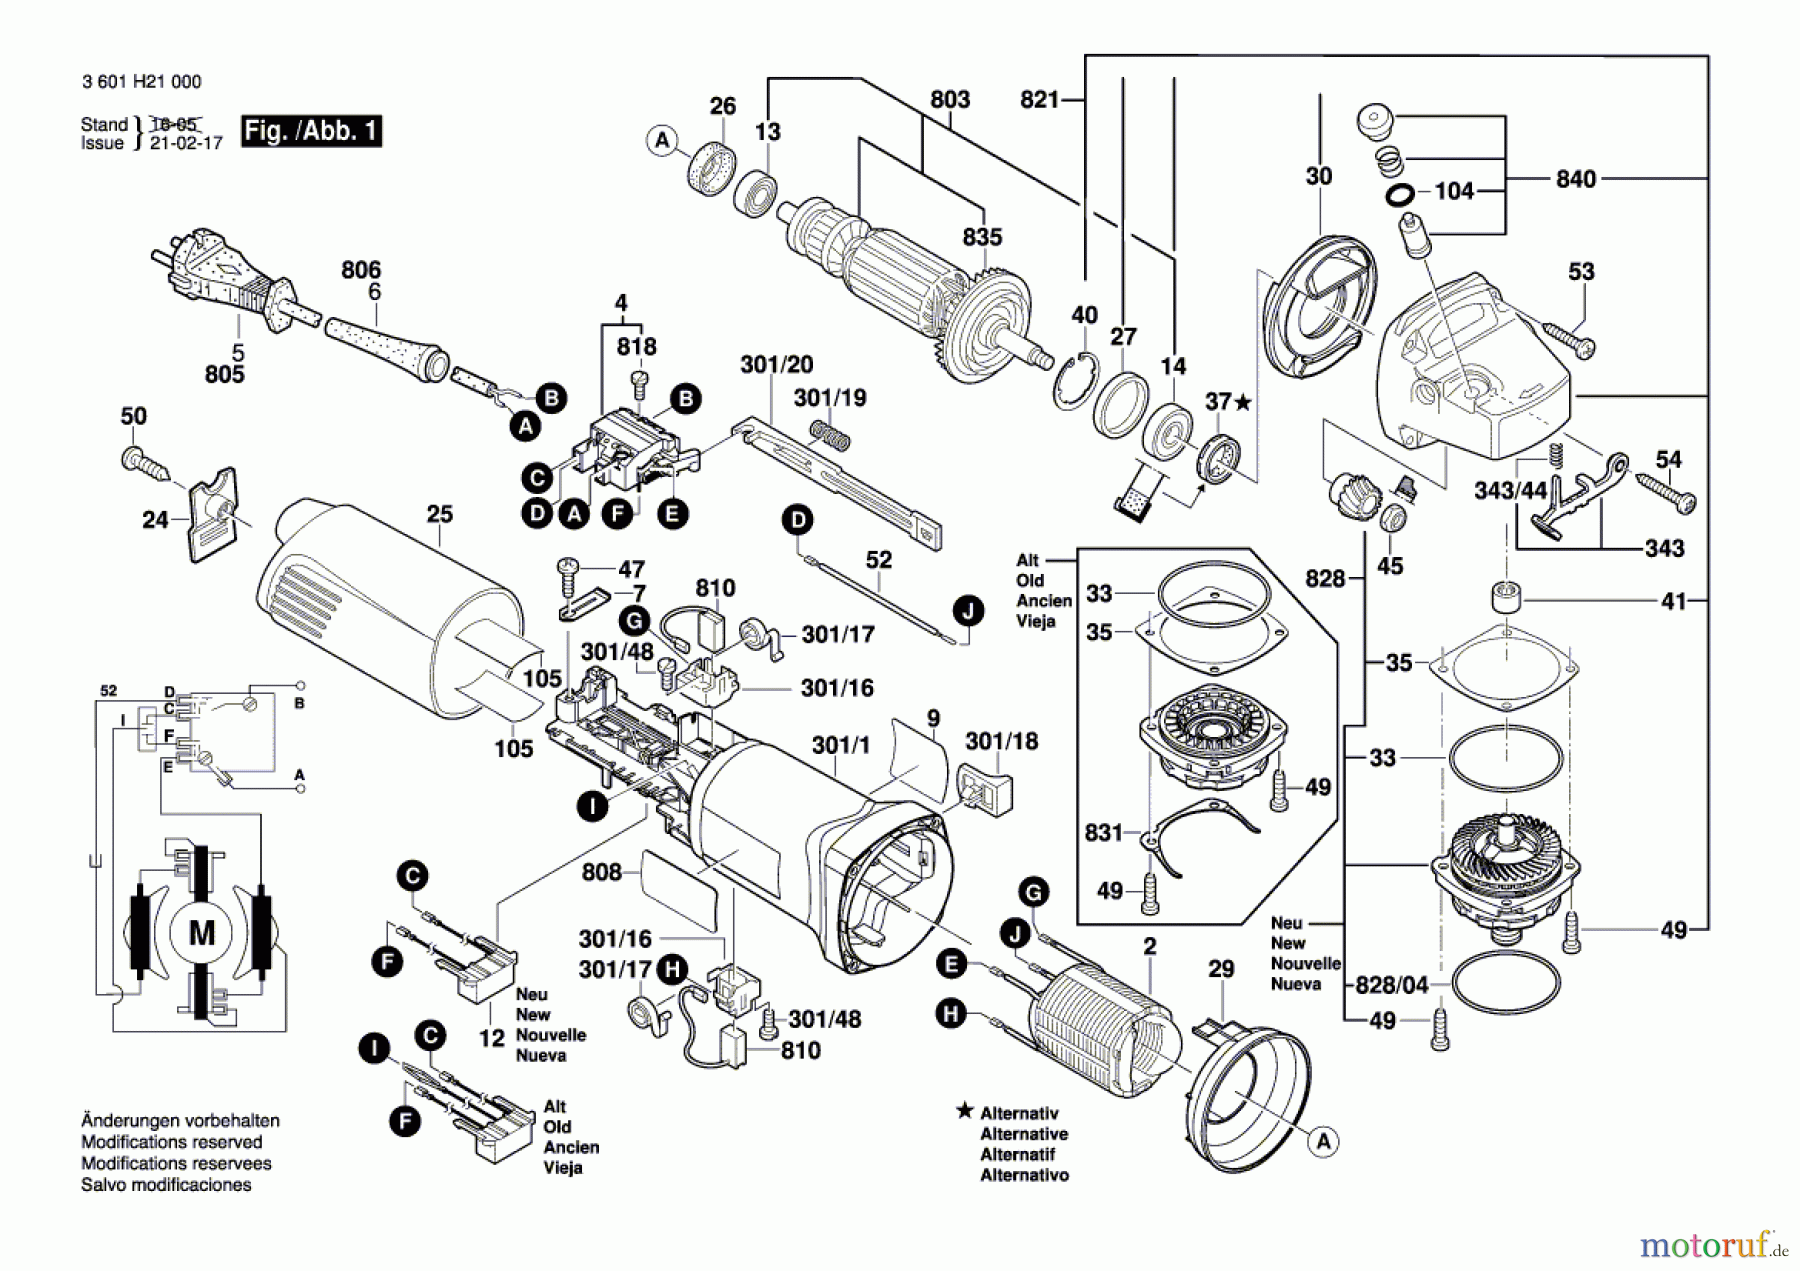  Bosch Werkzeug Winkelschleifer GWS 1000 Seite 1